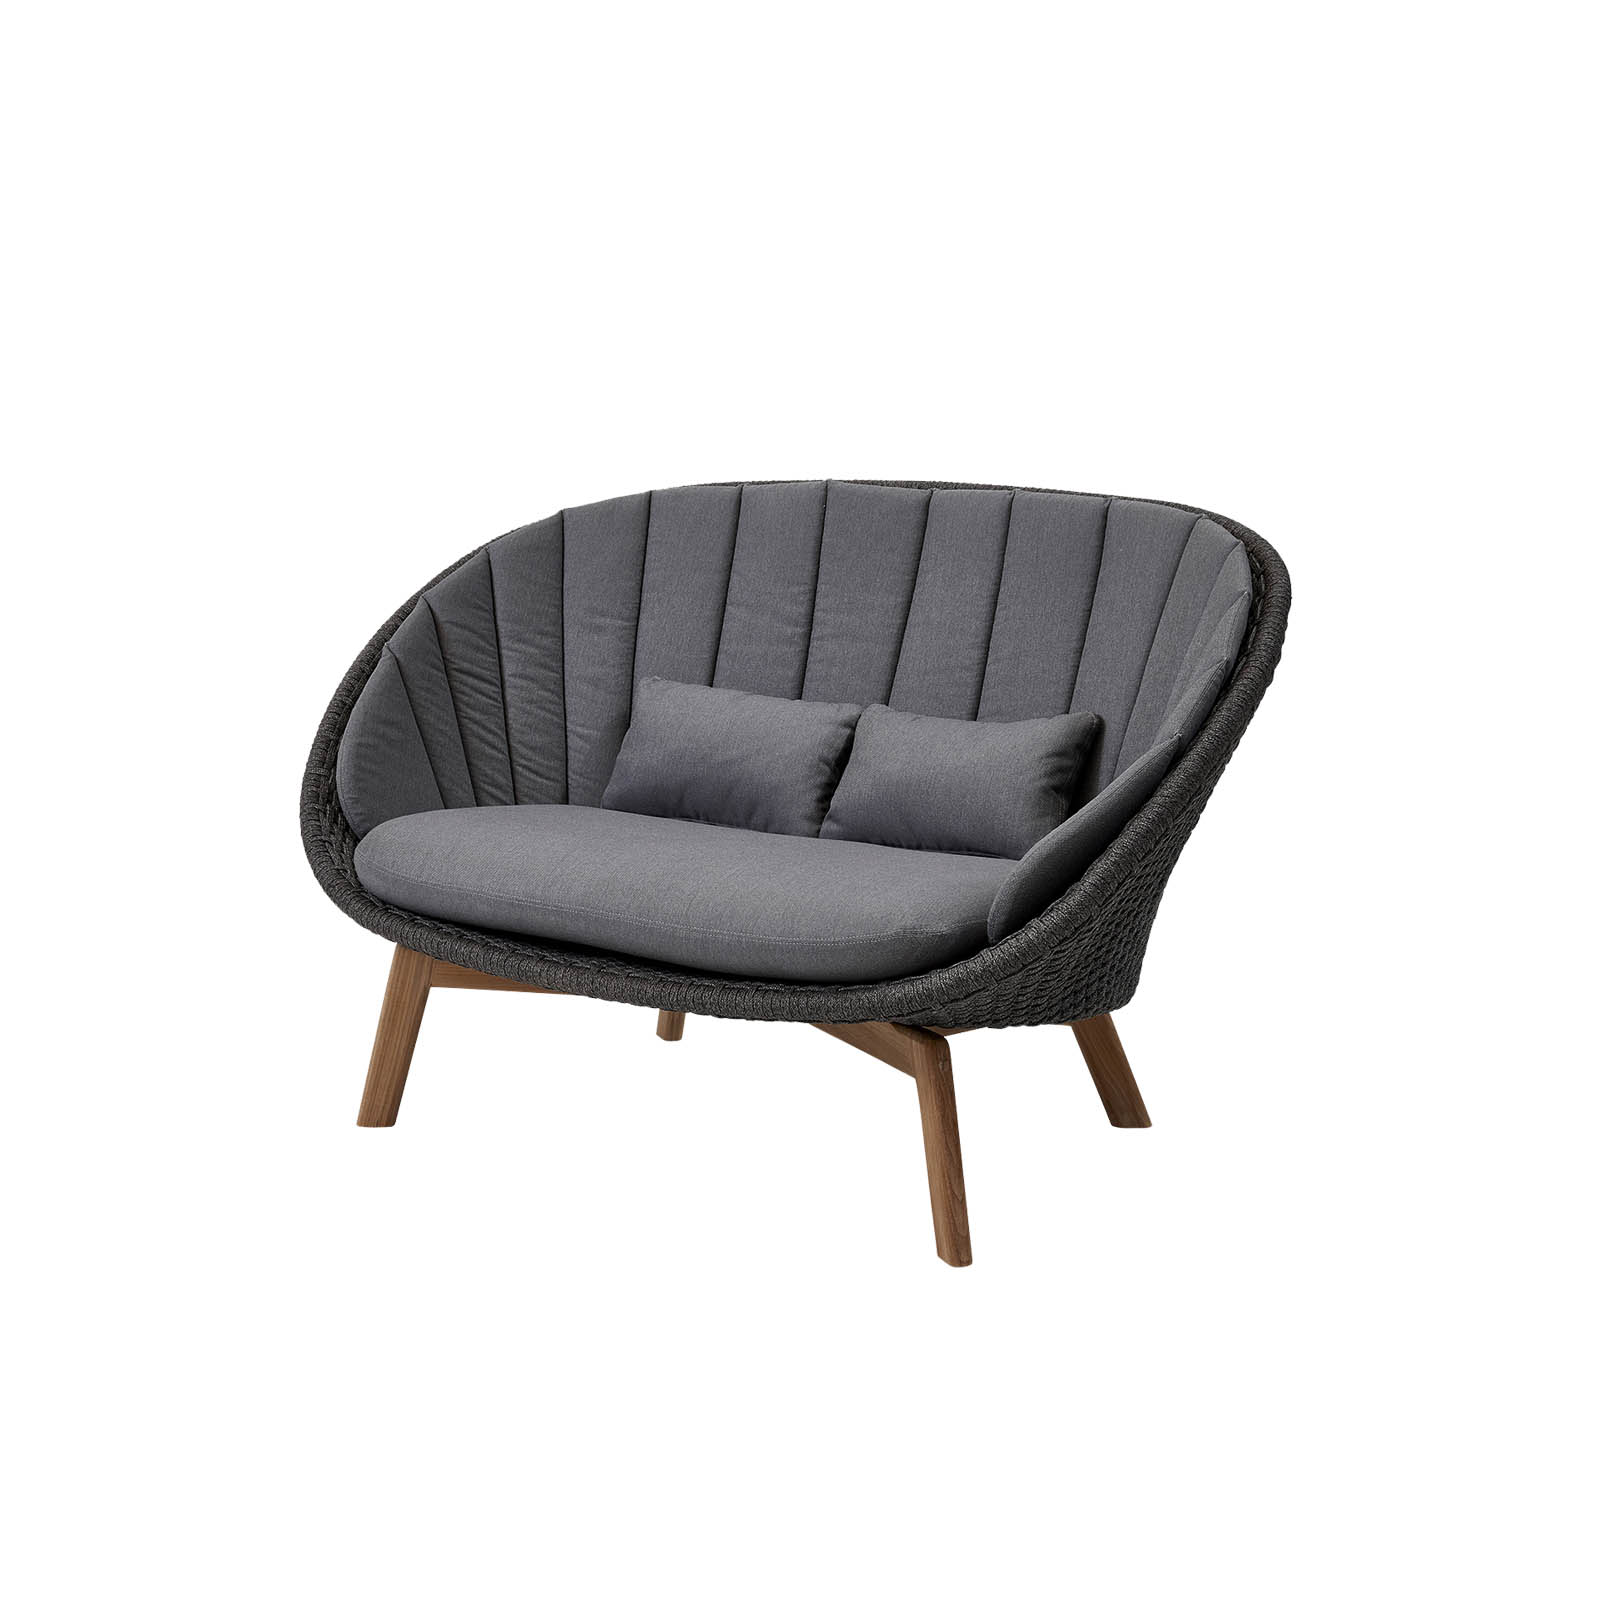 Peacock 2-Sitzer Sofa aus Cane-line Soft Rope in Dark Grey mit Kissen aus Cane-line Natté in Grey